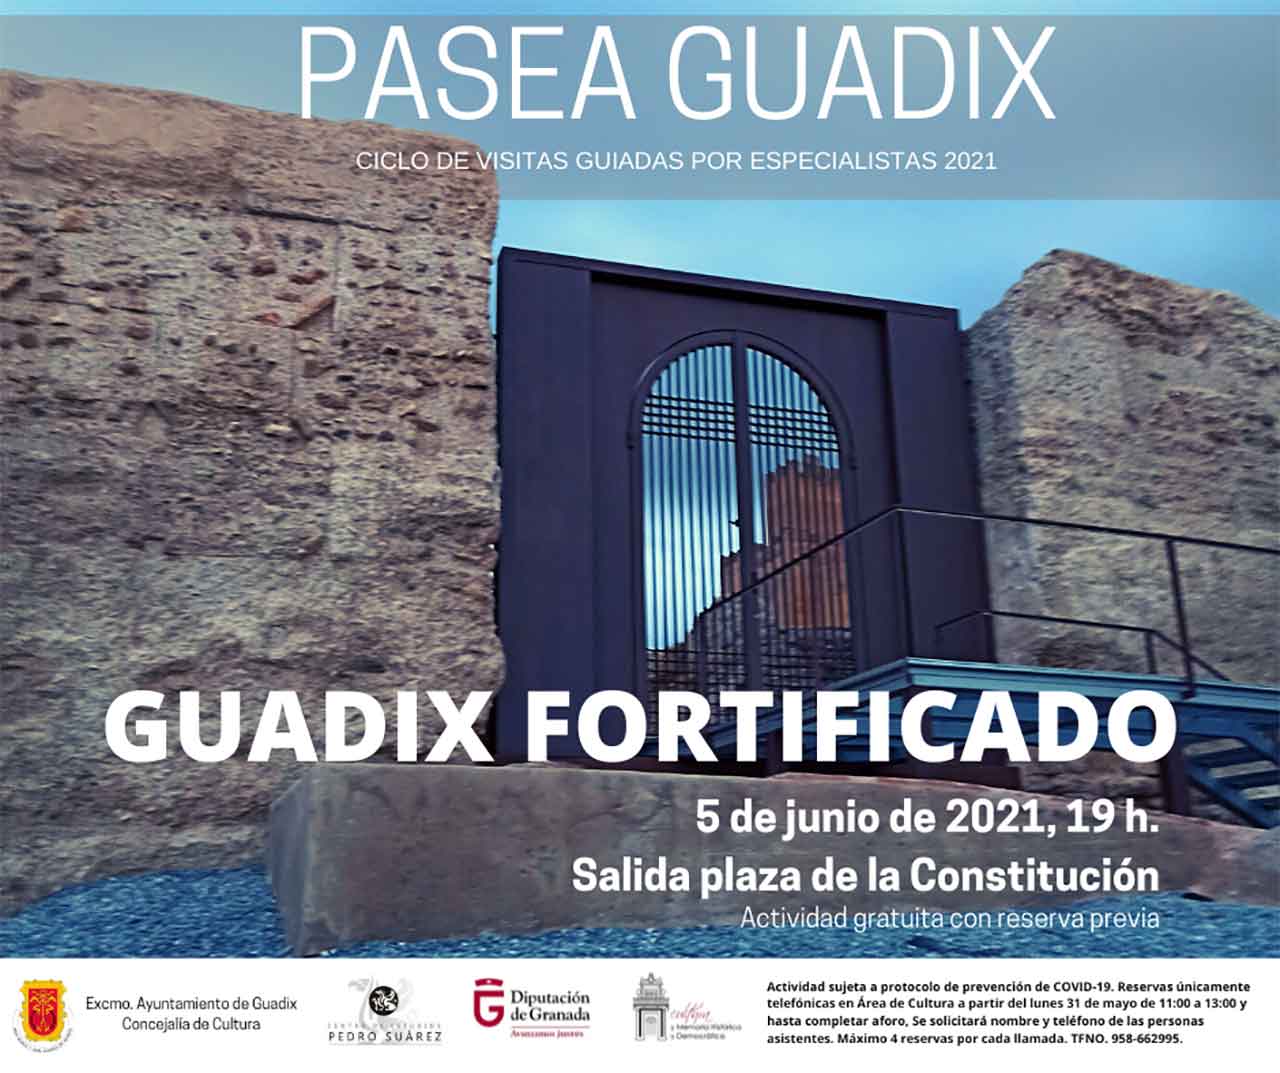 Guadix fortificado